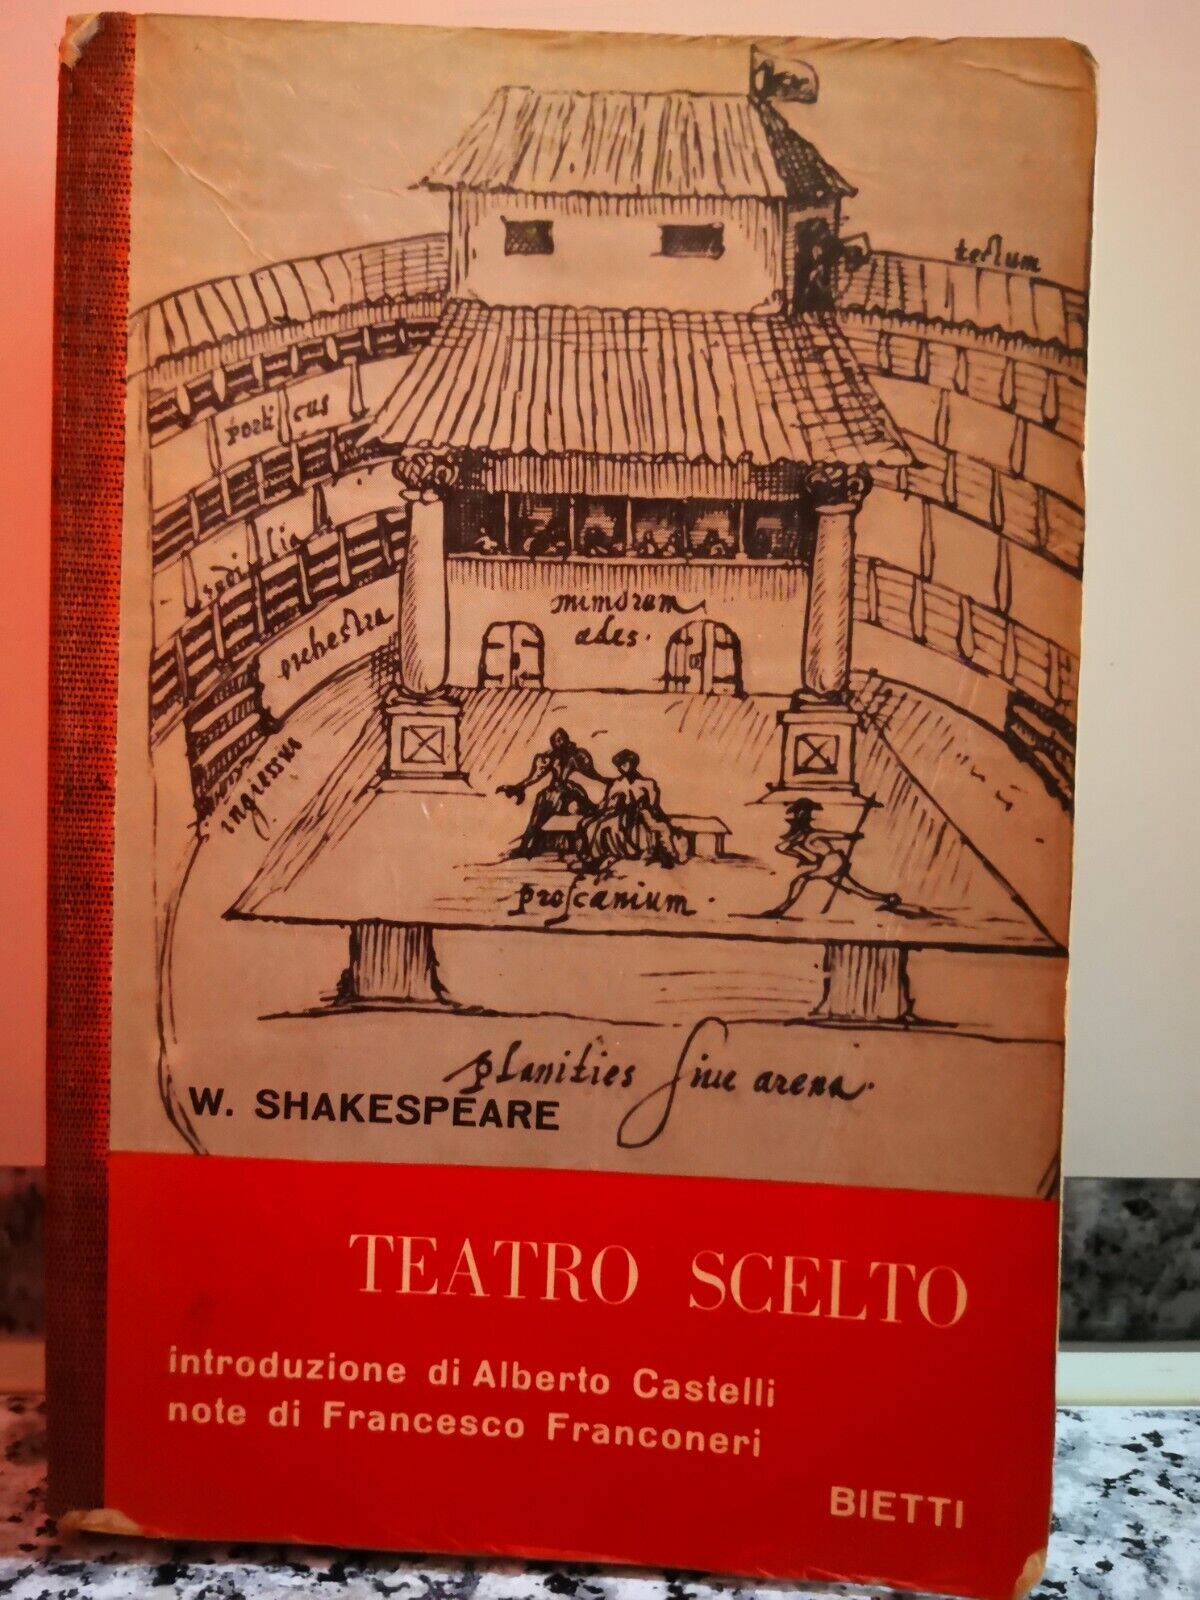   Teatro scelto  di William Shakespeare,  Bietti-F